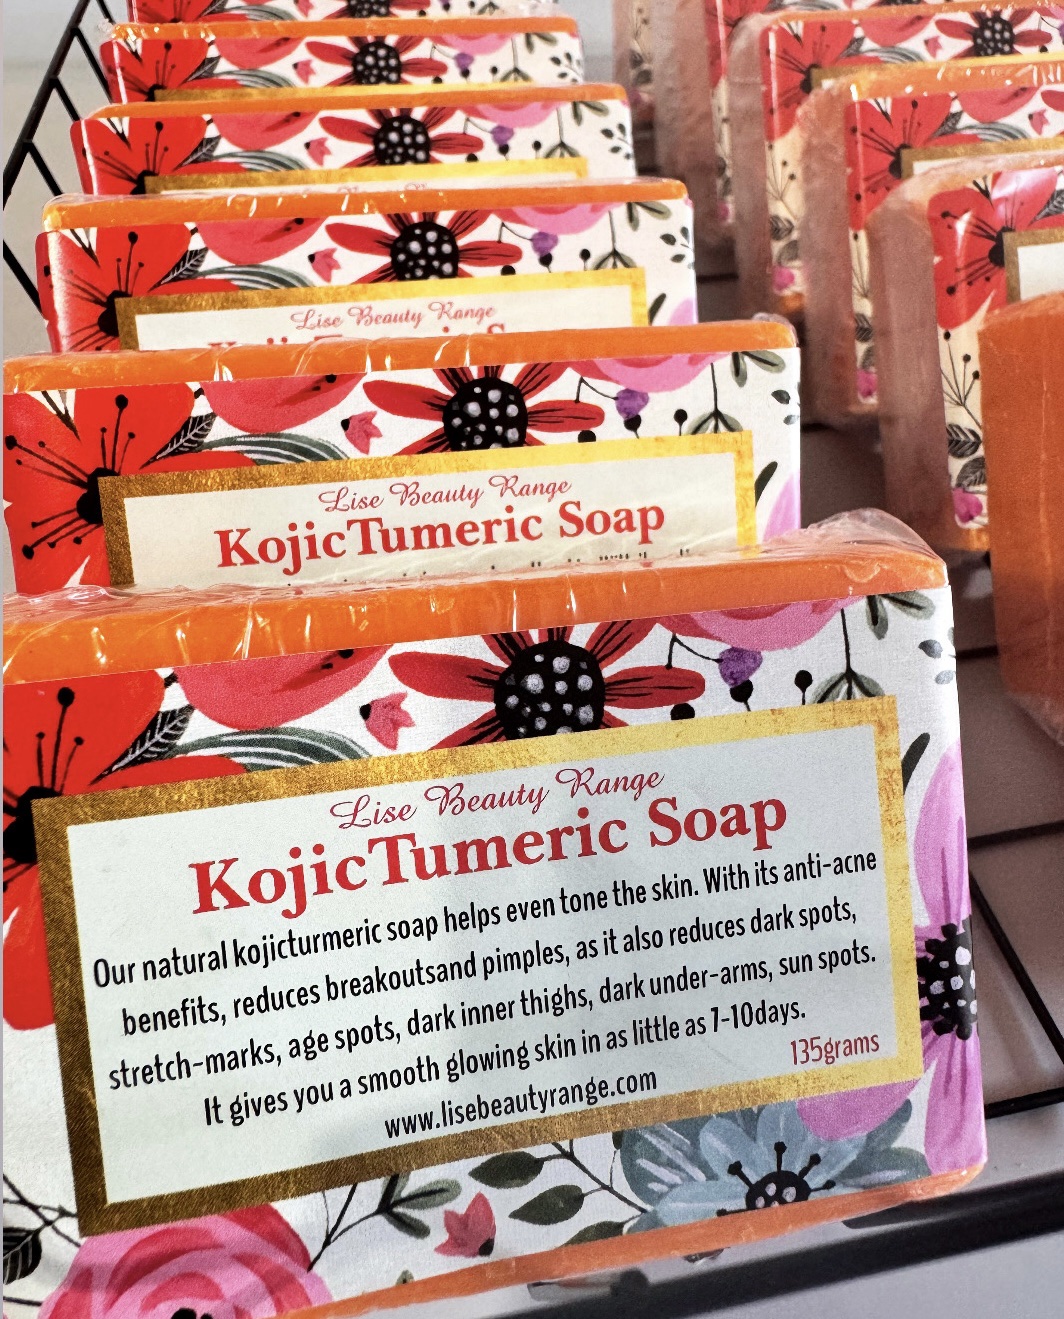 KojicTumeric soap